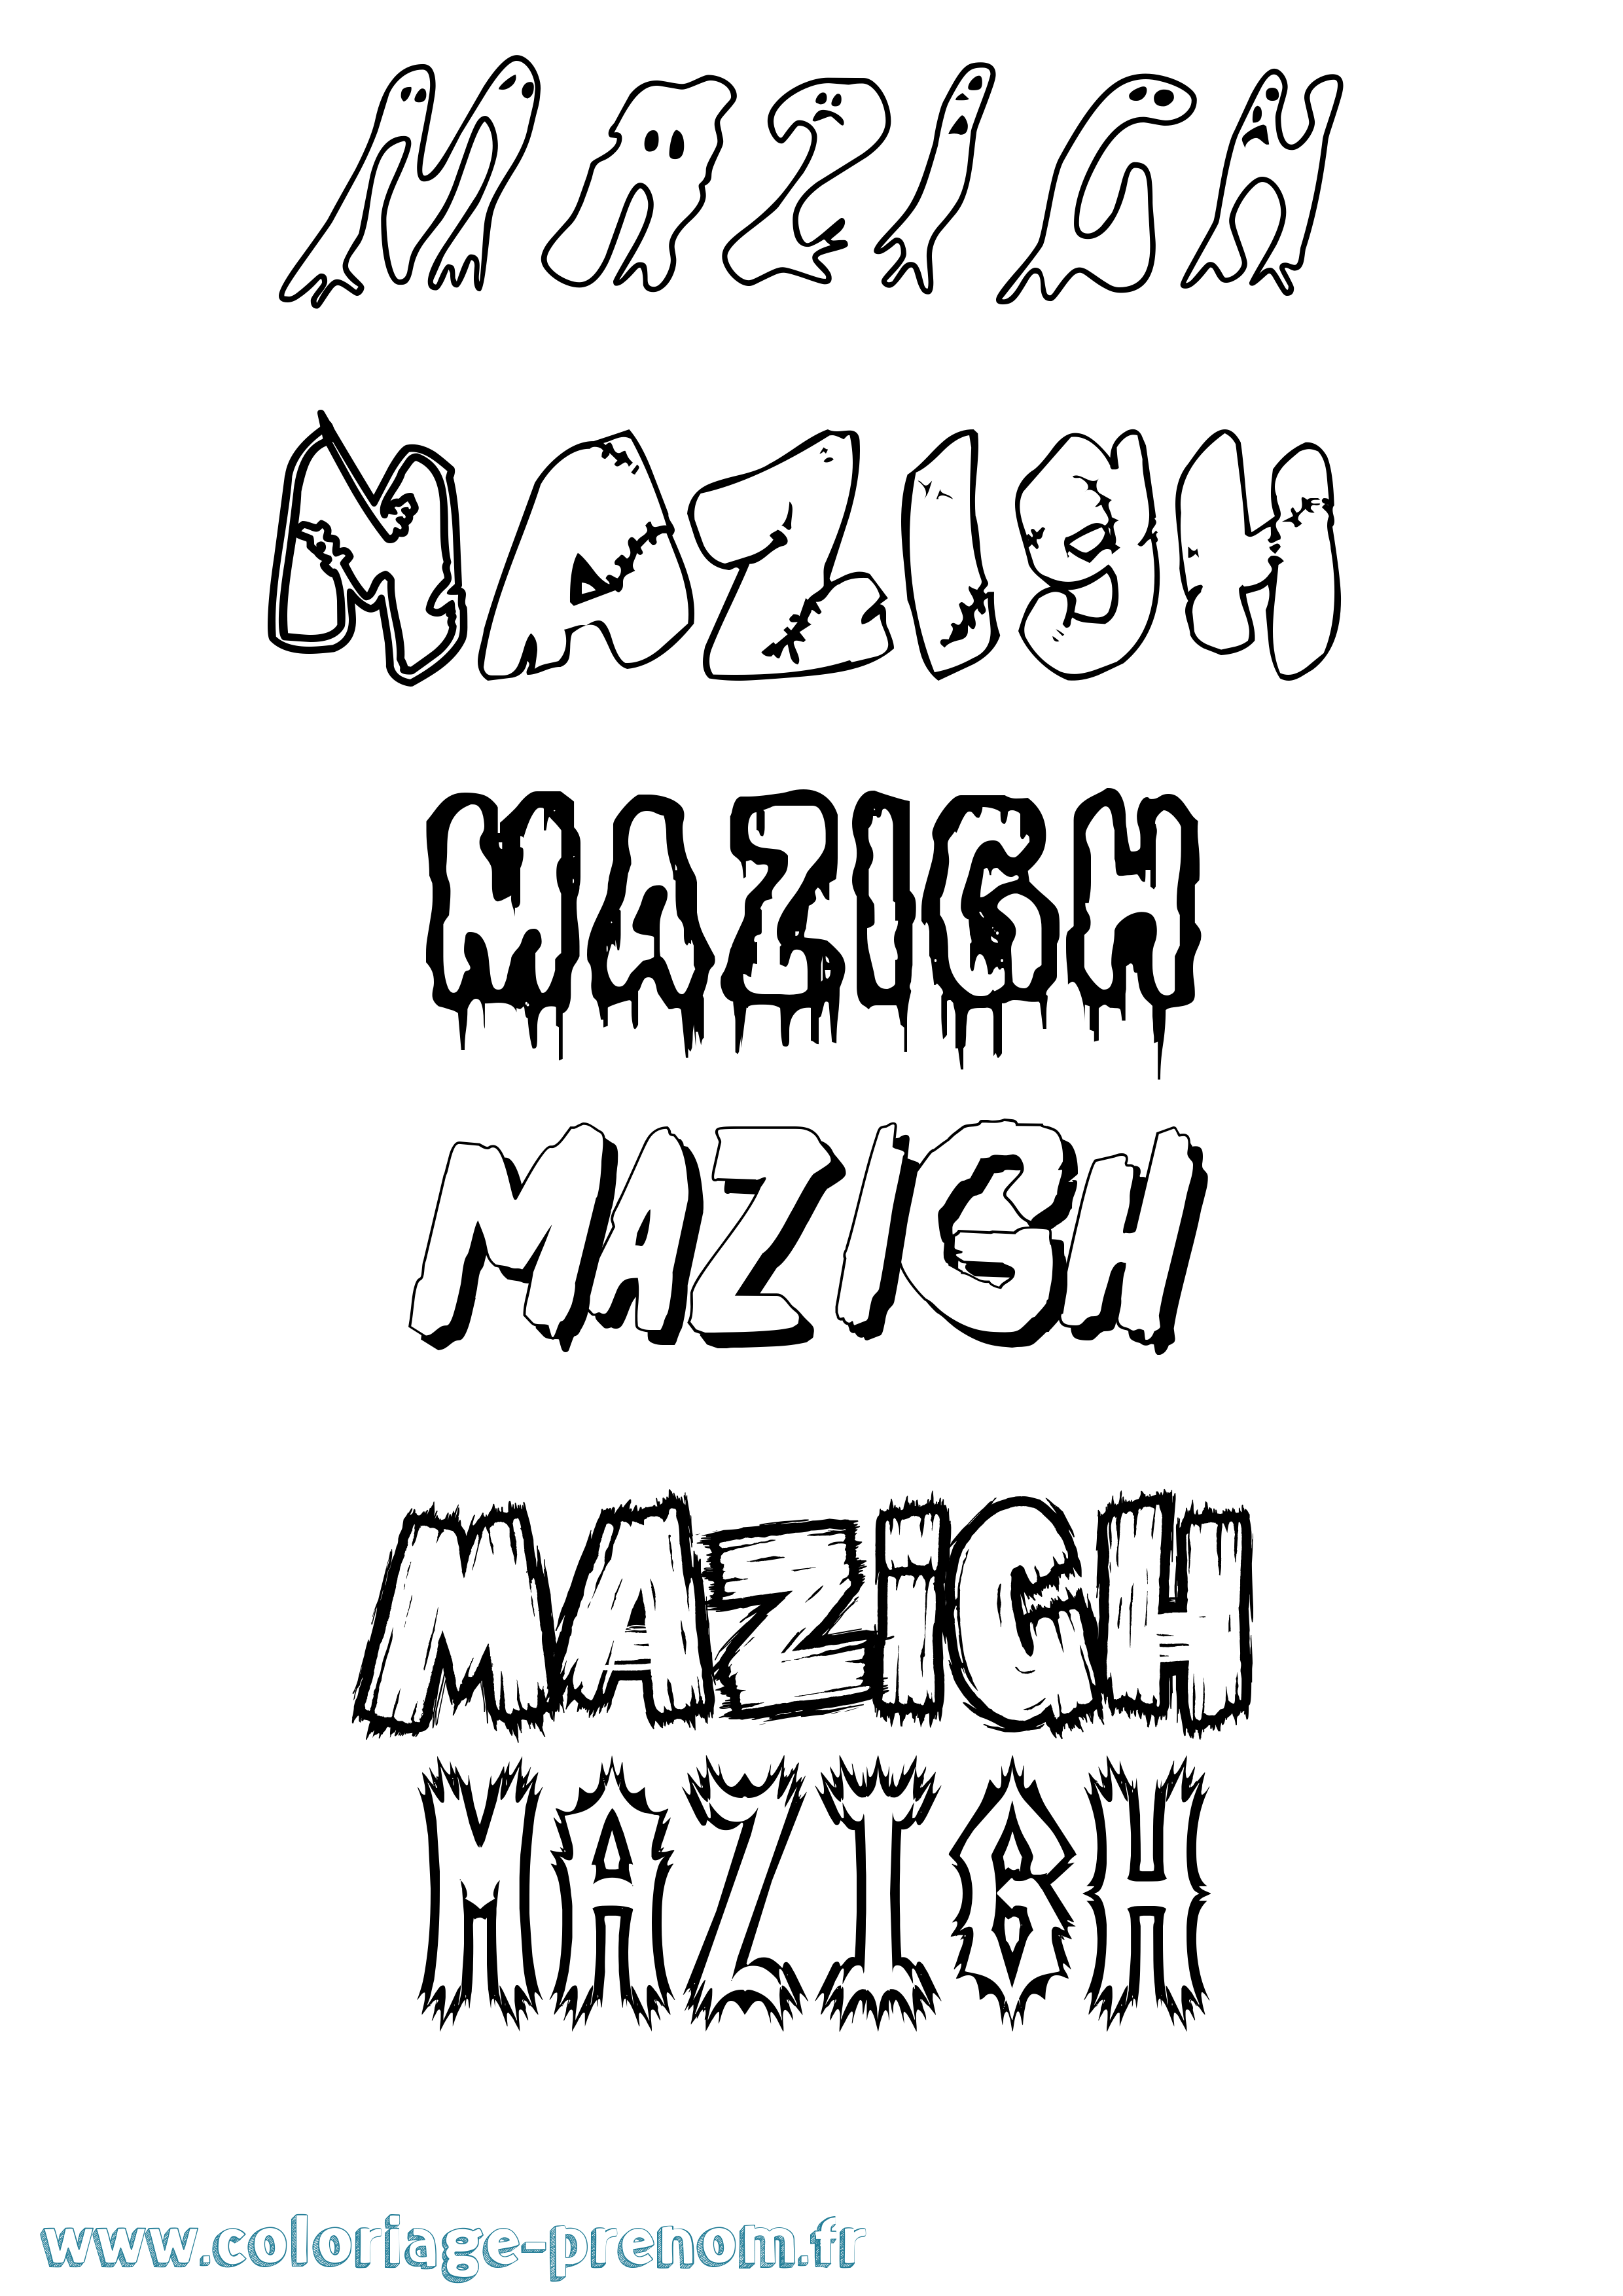 Coloriage prénom Mazigh Frisson